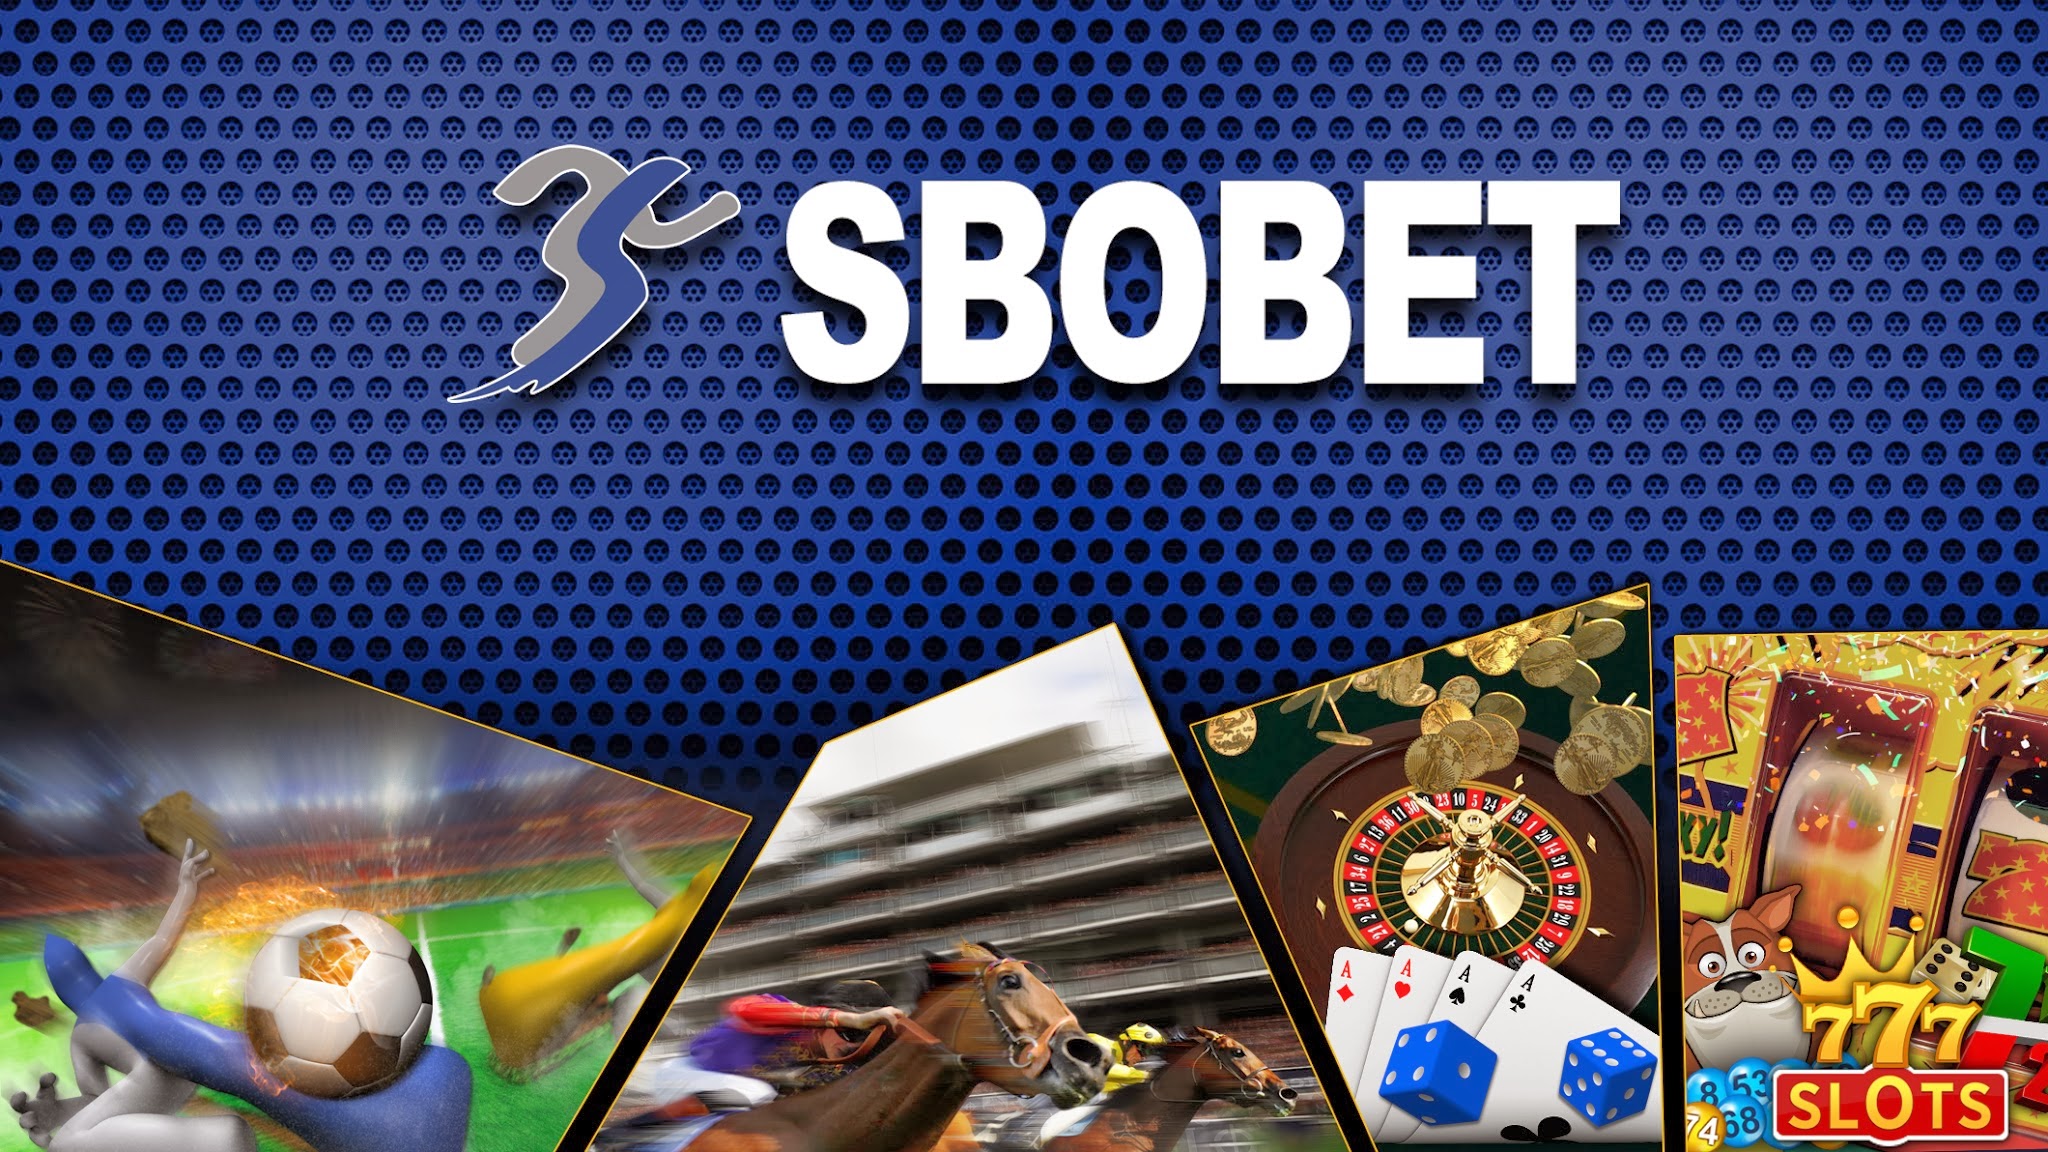 Sbobet Online เว็บเล่นเดิมพันทุกชนิดที่มีความสเถียรอันดับ 1